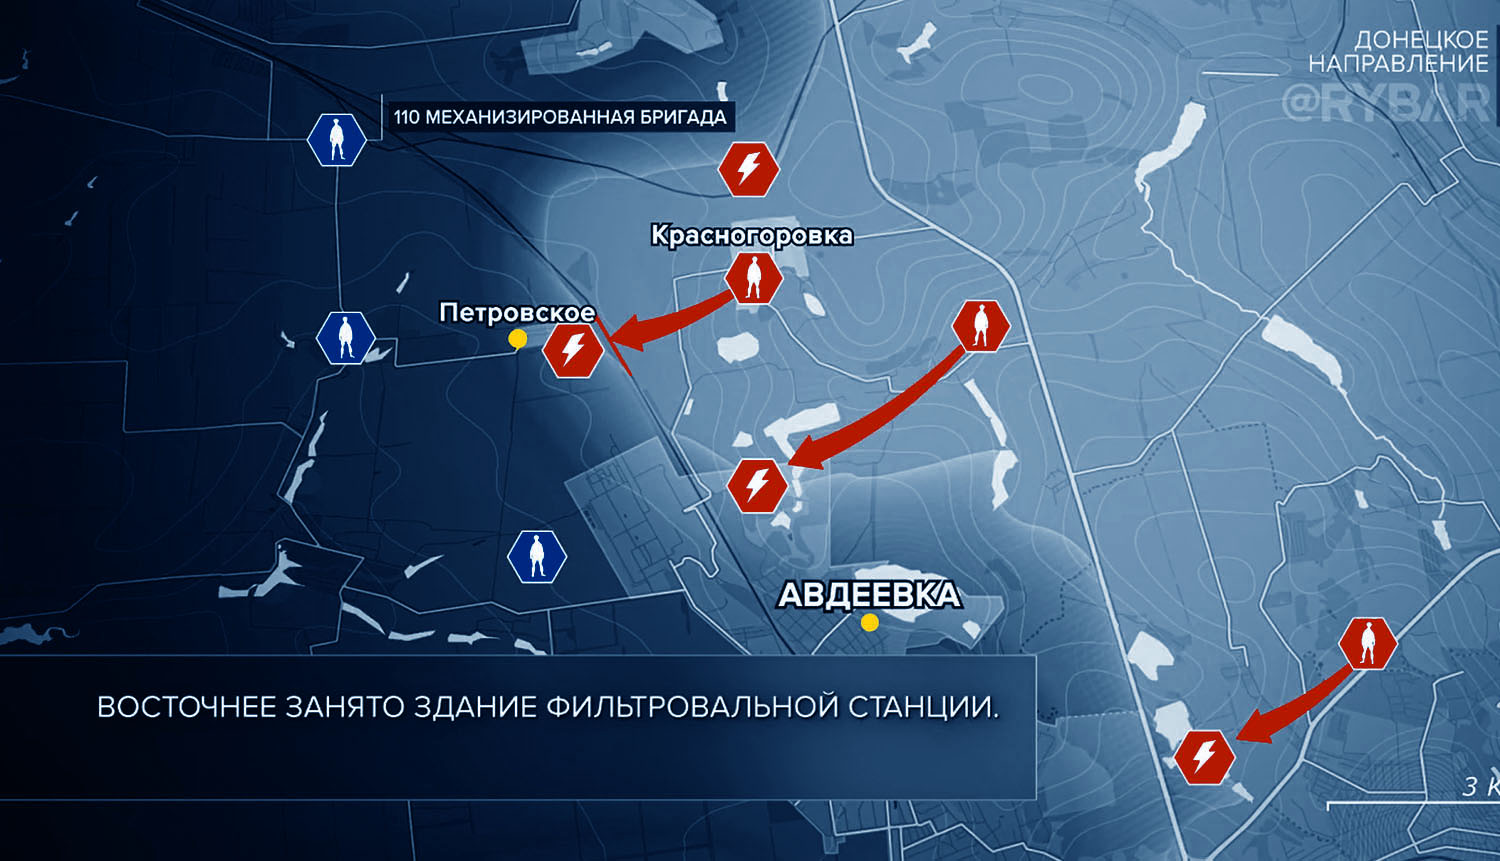 Карта боевых действий на Украине, Донецкое направление, на 16.11.23 г. Карта СВО от «Рыбарь».